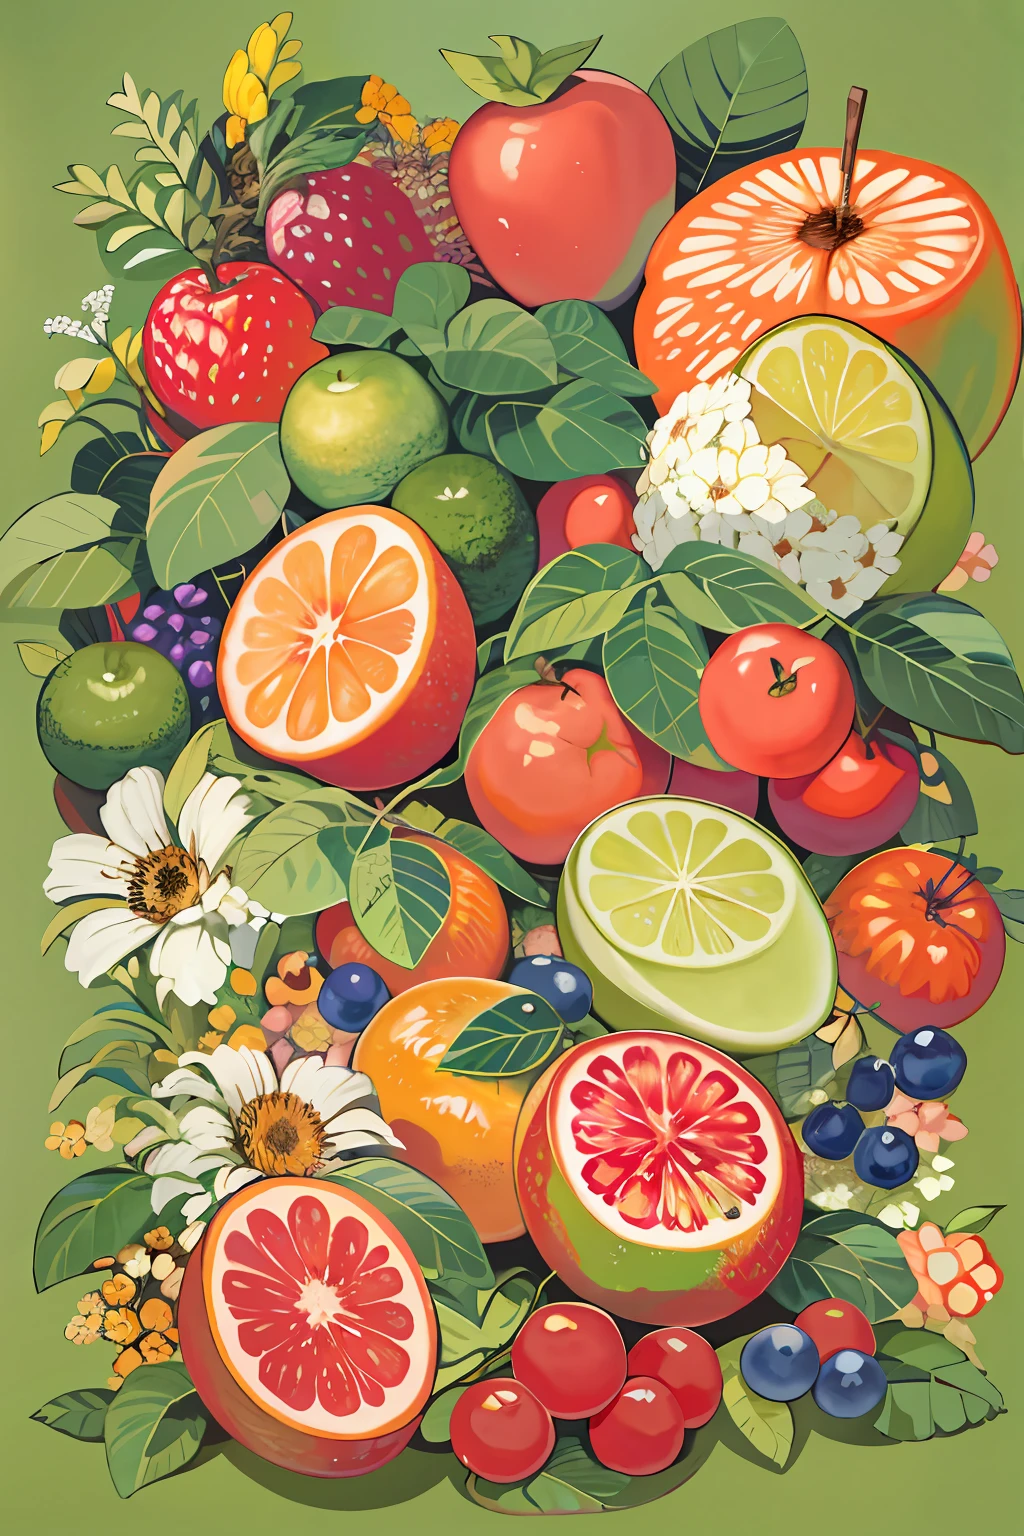 テーブルの上にはたくさんの果物の絵があります, 果物と花, フルカラーイラスト, 著者：ジョン・ウェルナショット, made of 果物と花, 花と果物でできた, 果物, フルカラーW 1024, フルカラーデジタルイラスト, 著者：リチャード・メイヒュー, 公式アート, ガッシュの詳細な絵画で, クールなイラスト